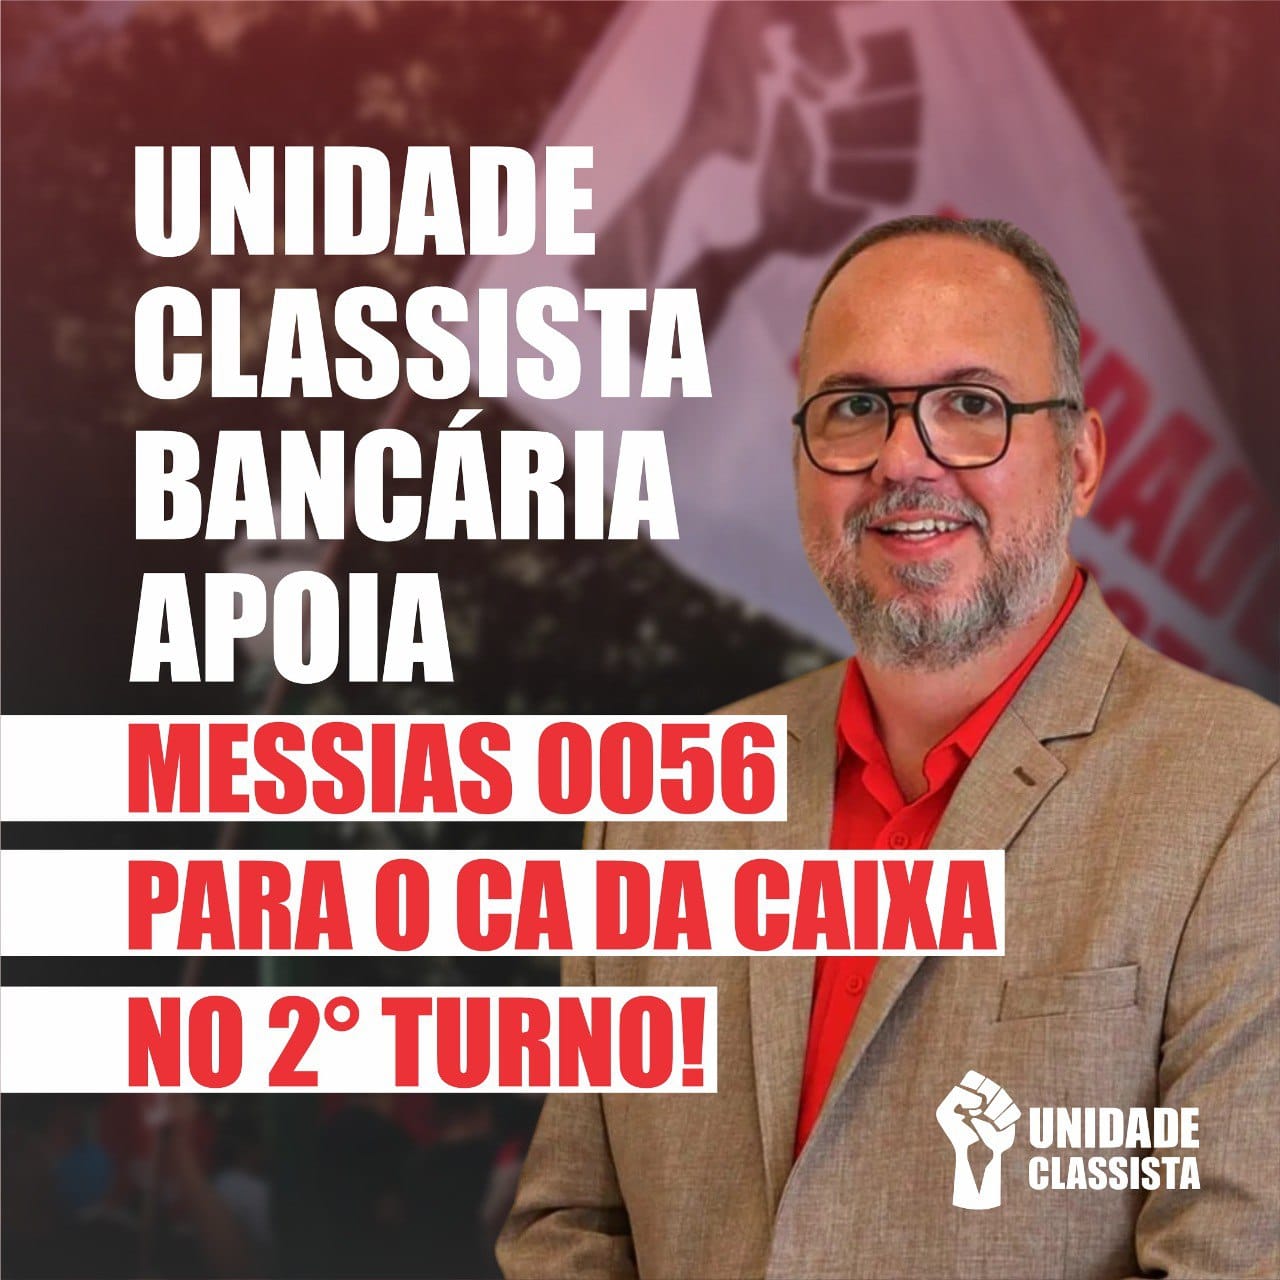 UNIDADE CLASSISTA BANCÁRIA APOIA MESSIAS OO56 PARA O CA DA CAIXA NO 2° TURNO!